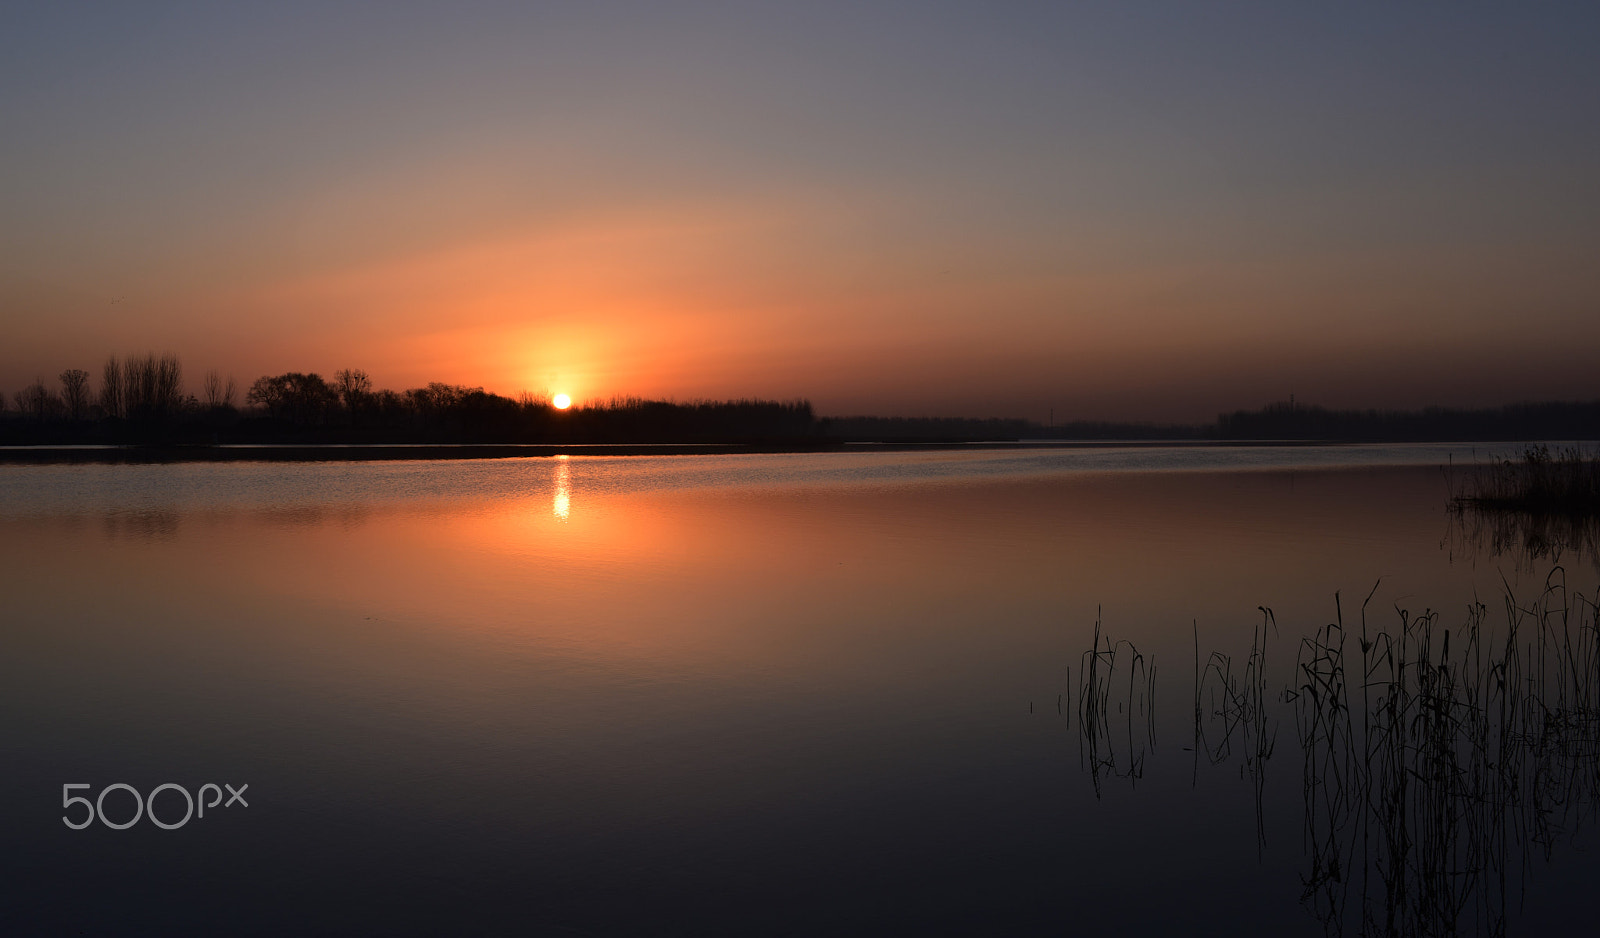 Nikon D810 + AF-S Nikkor 35mm f/1.8G sample photo. Sunrise in the river photography